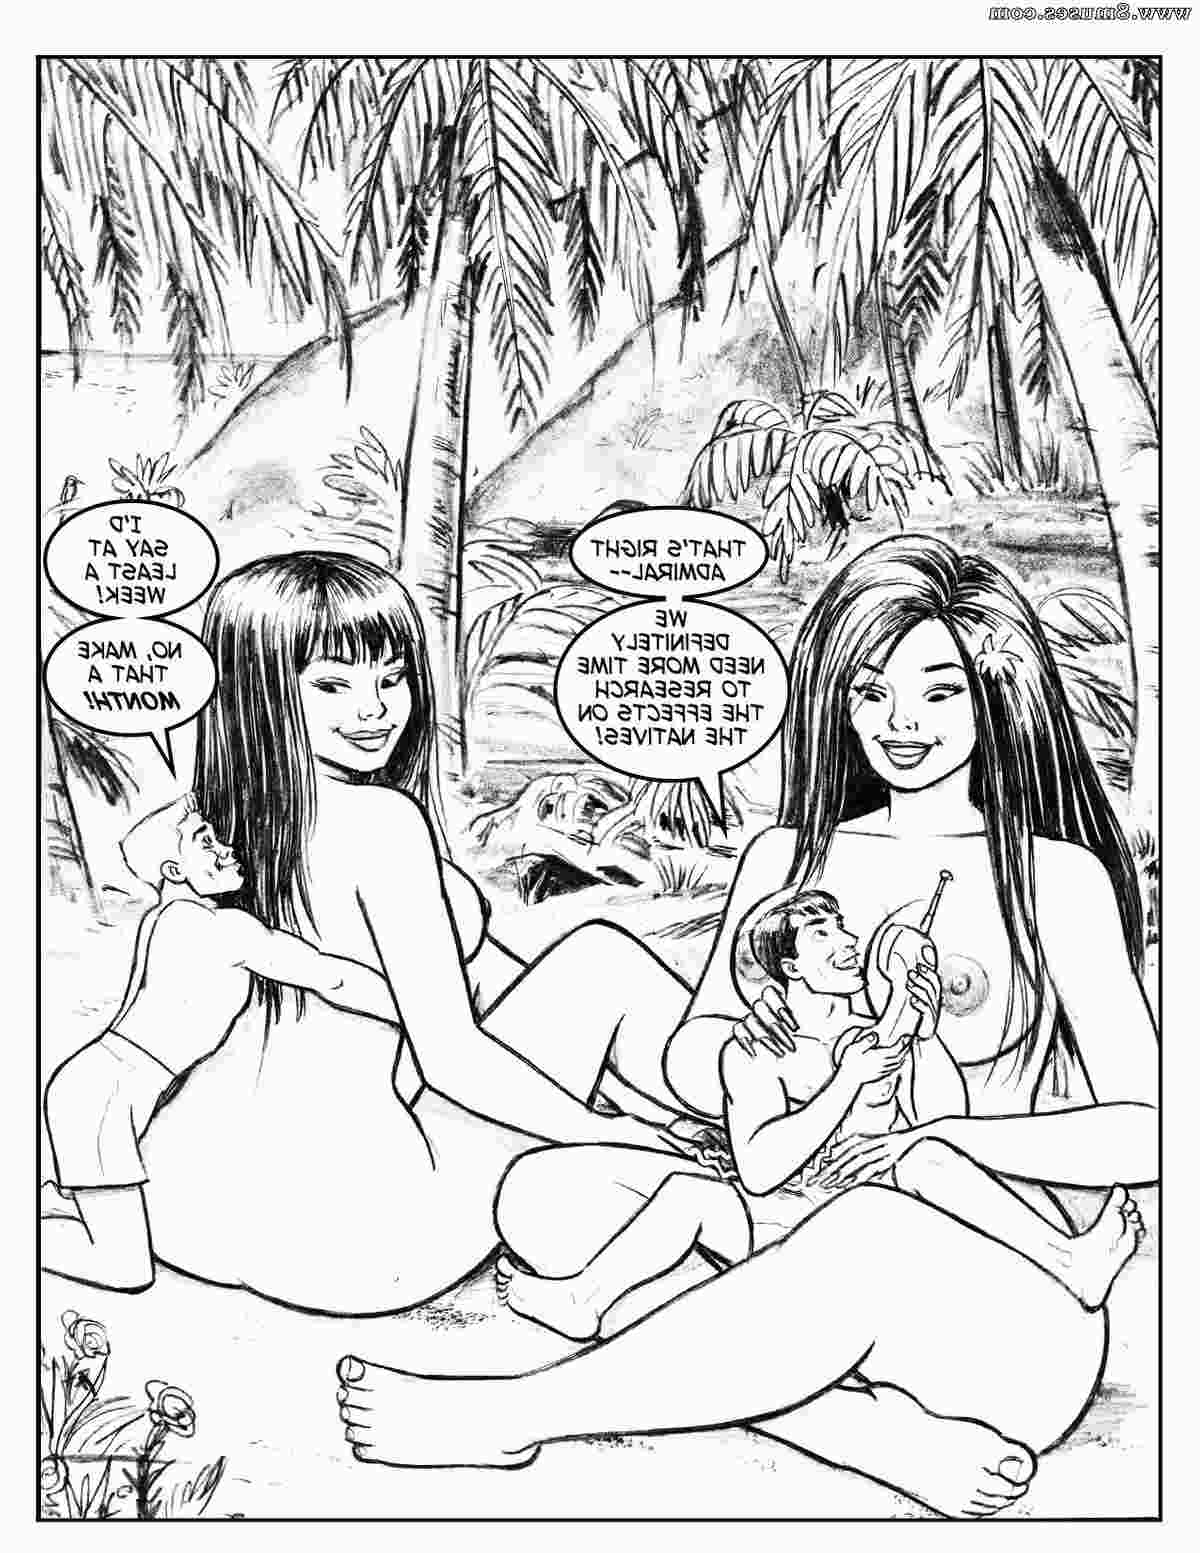 DreamTales-Comics/Bikini-Bomb-Blast Bikini_Bomb_Blast__8muses_-_Sex_and_Porn_Comics_15.jpg